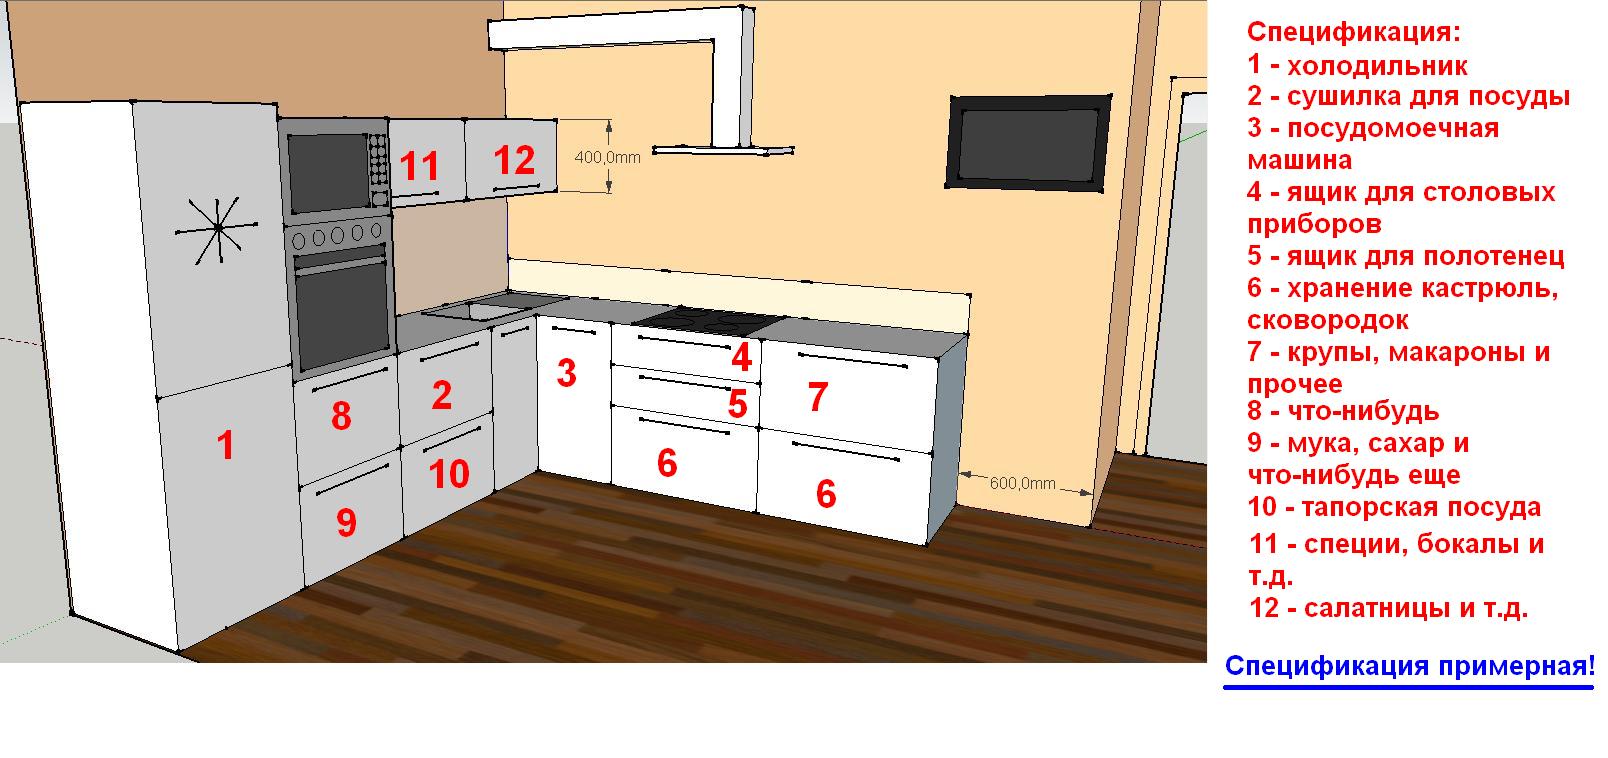 Расположение кухонных шкафов